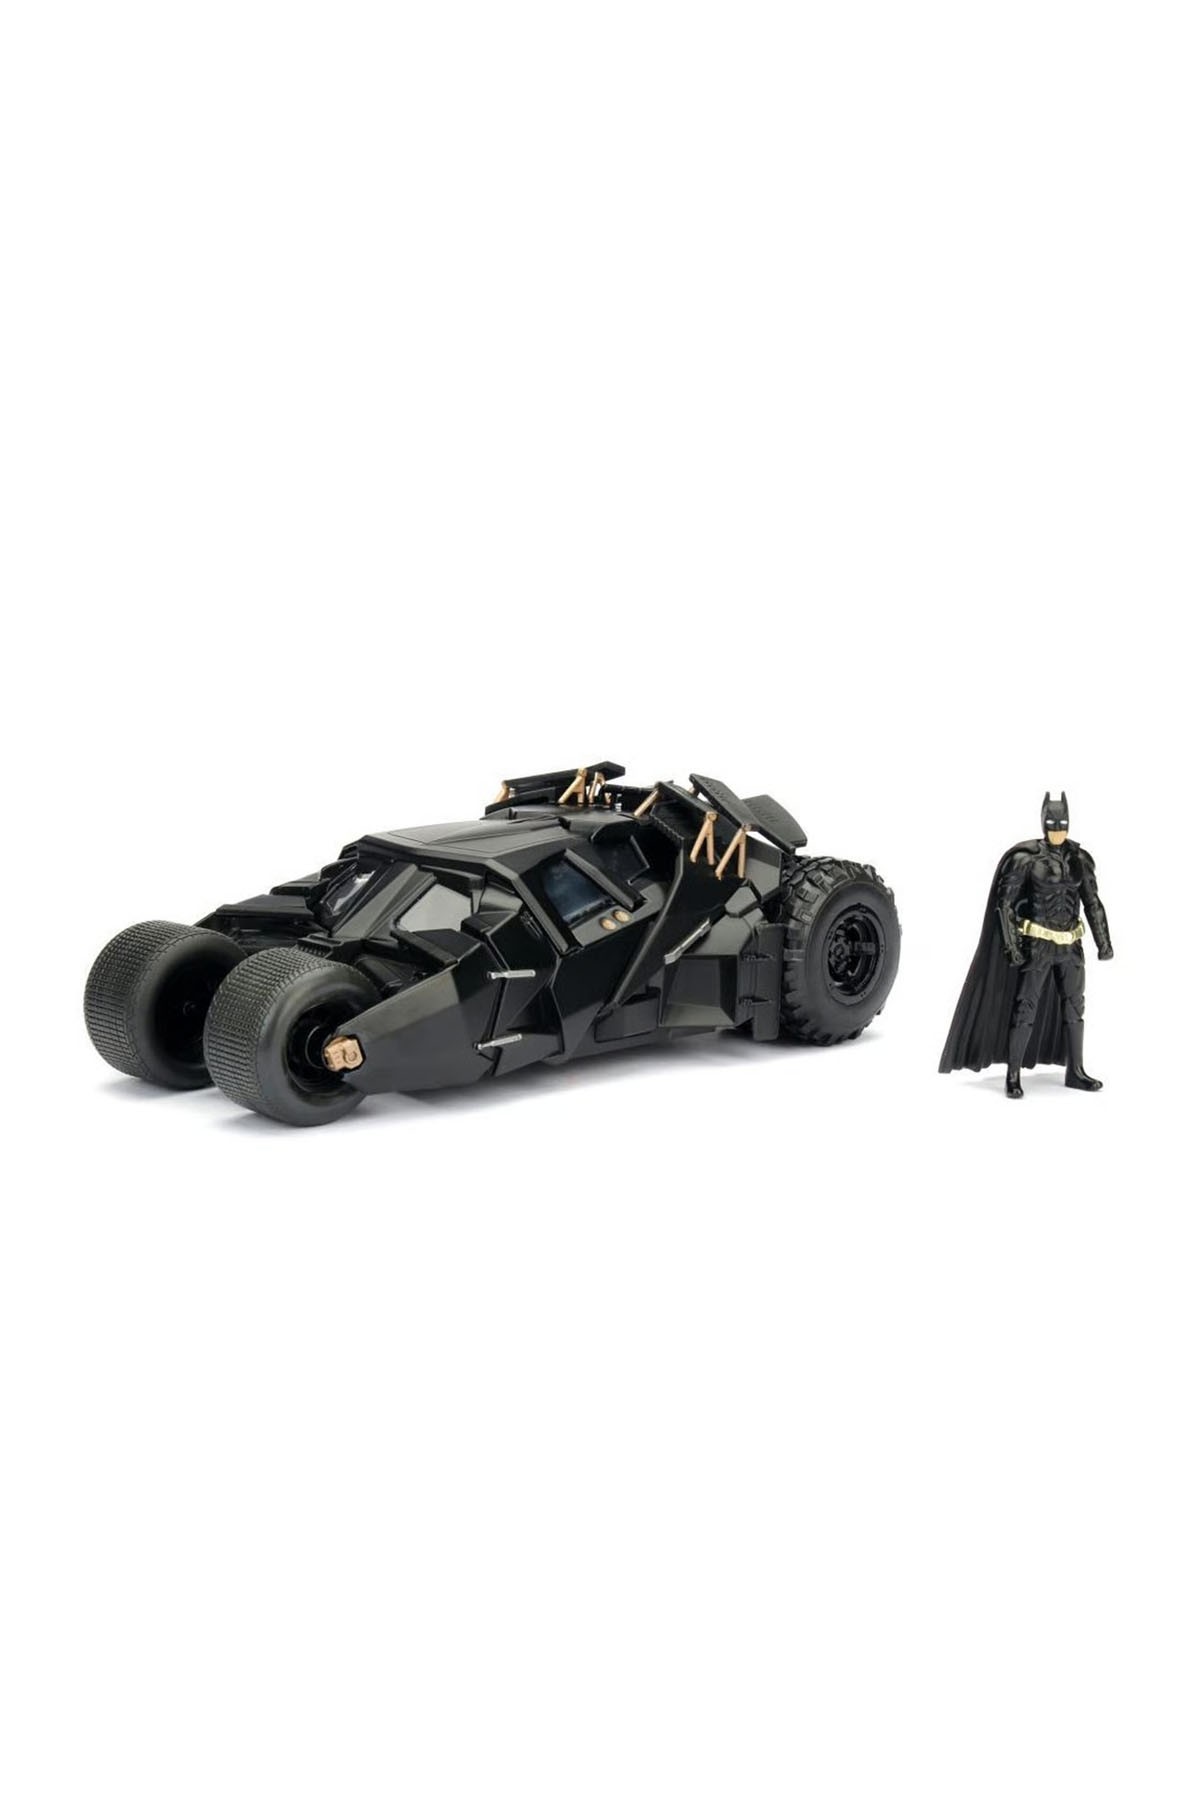 Jada 1:24 Batman The Dark Knight Batmobile